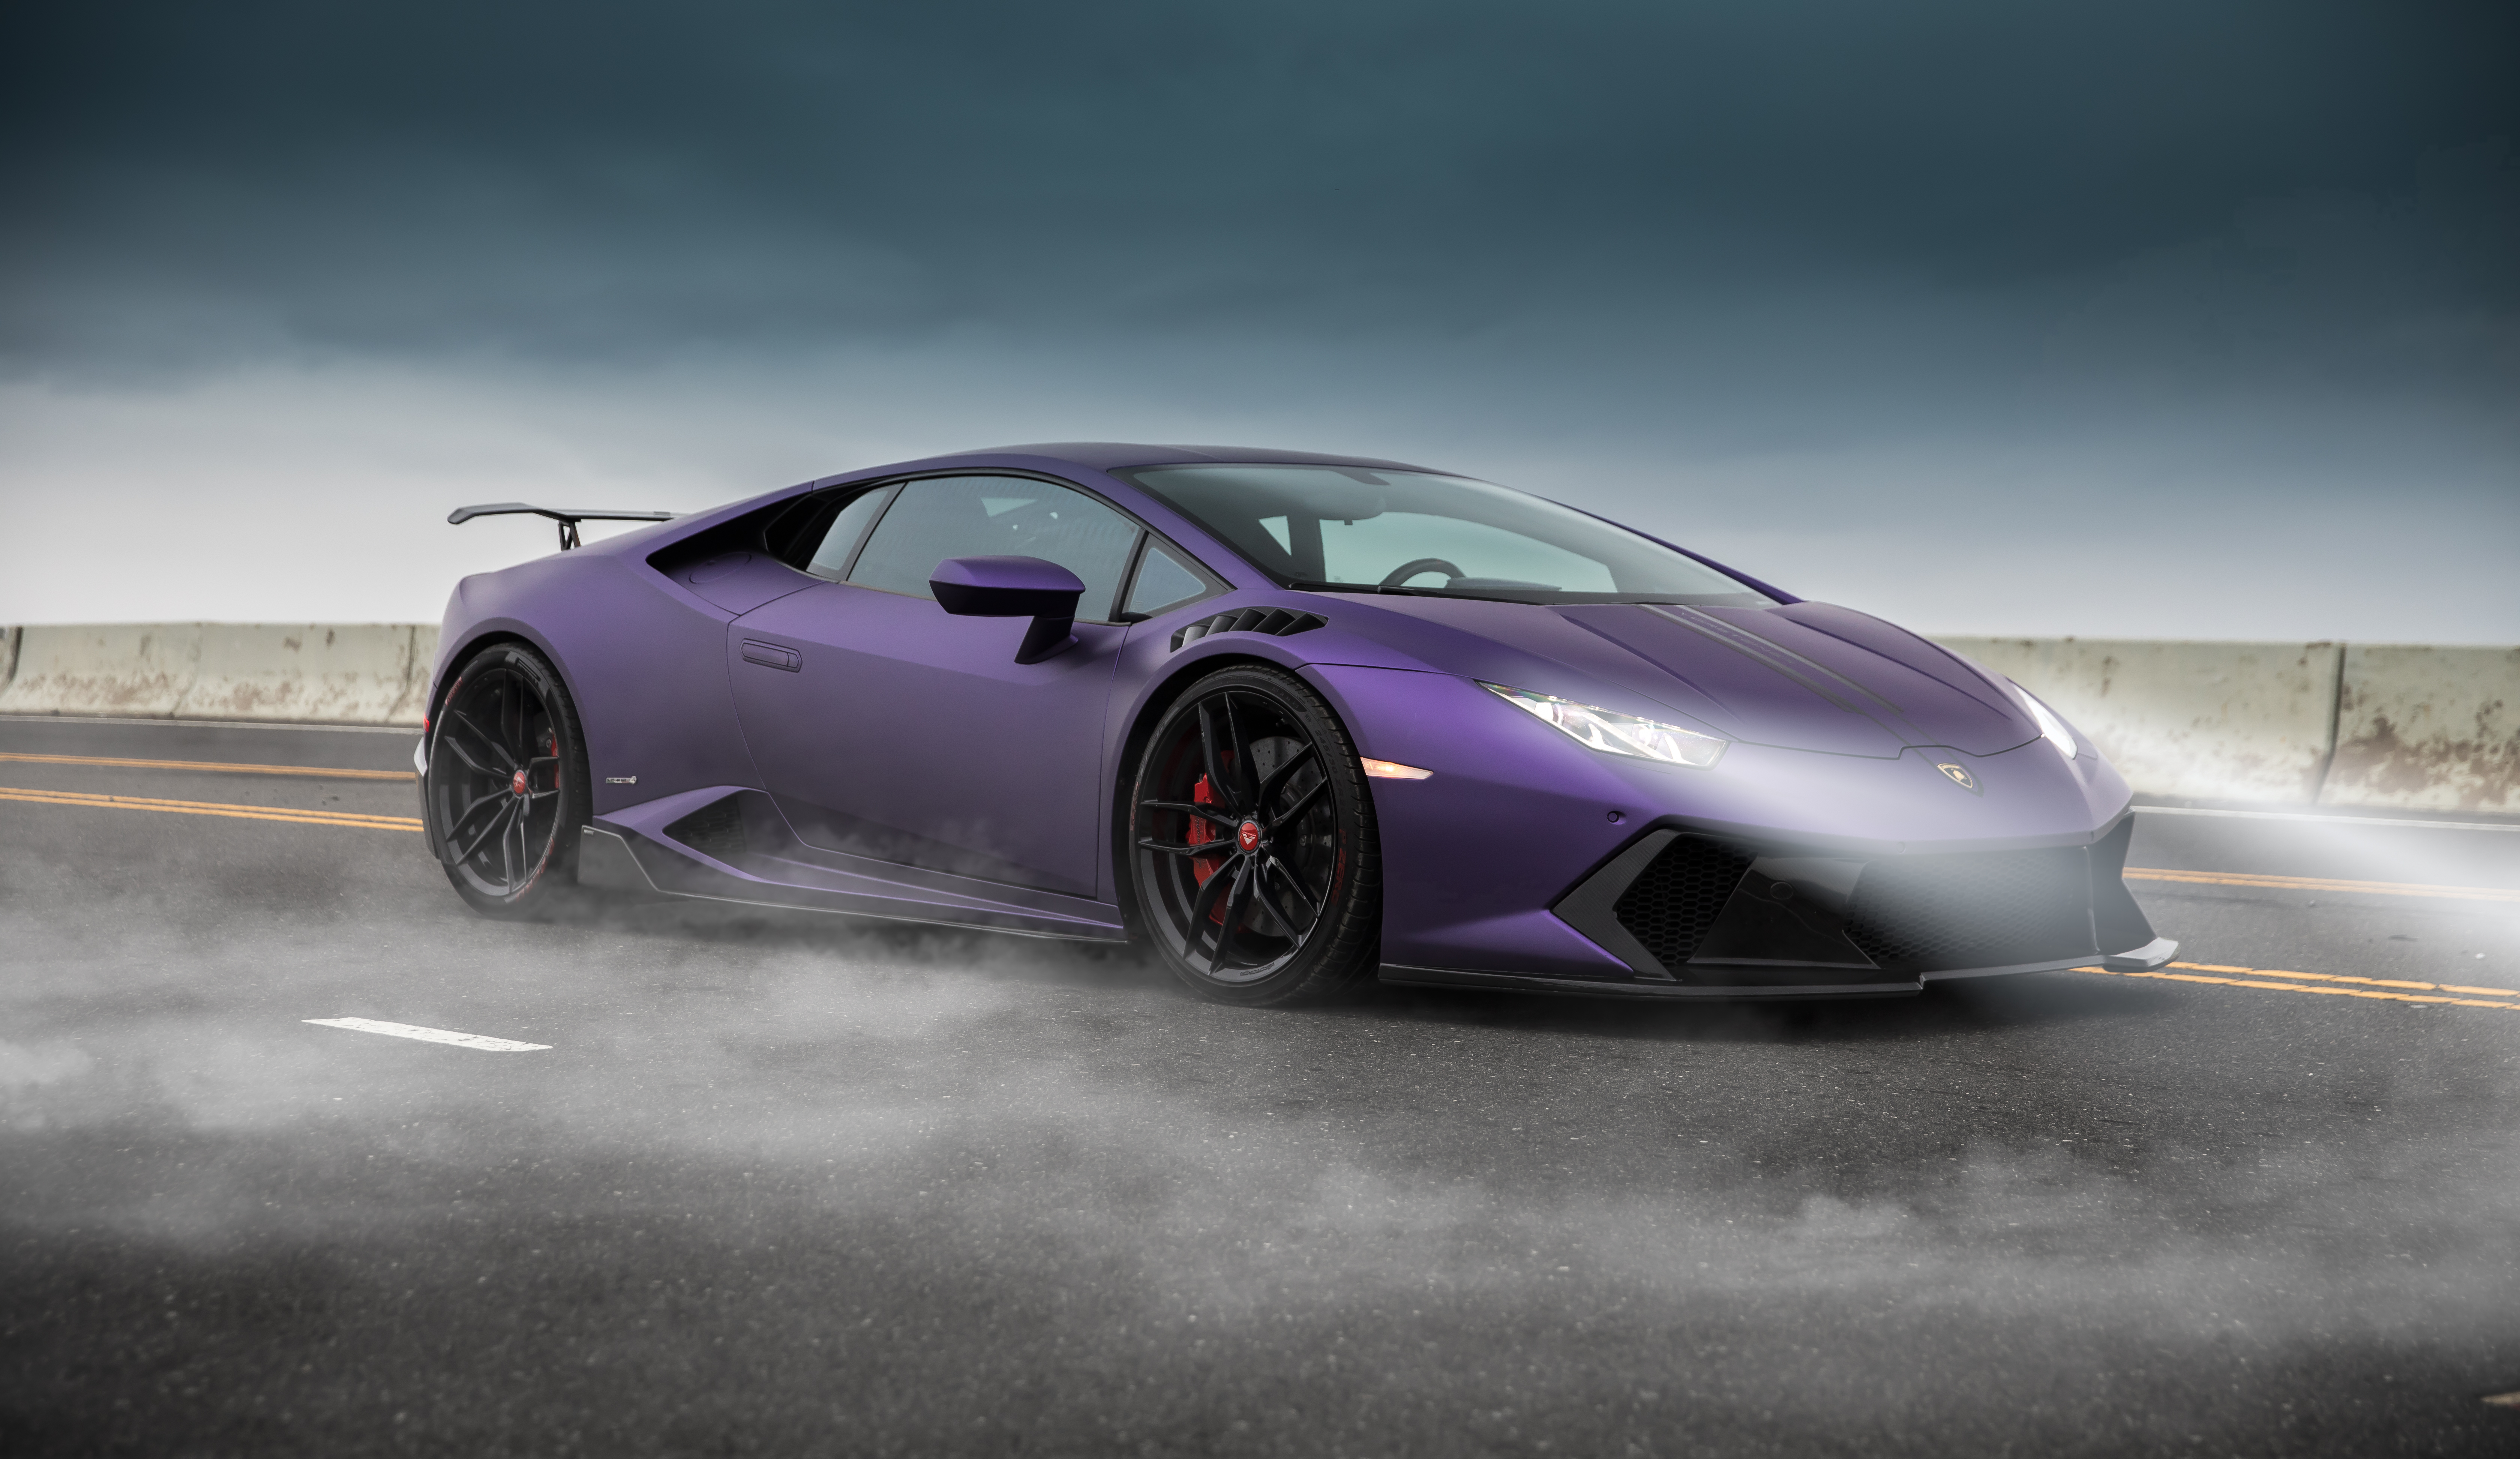 Purple Lamborghini Huracan on a smoky road